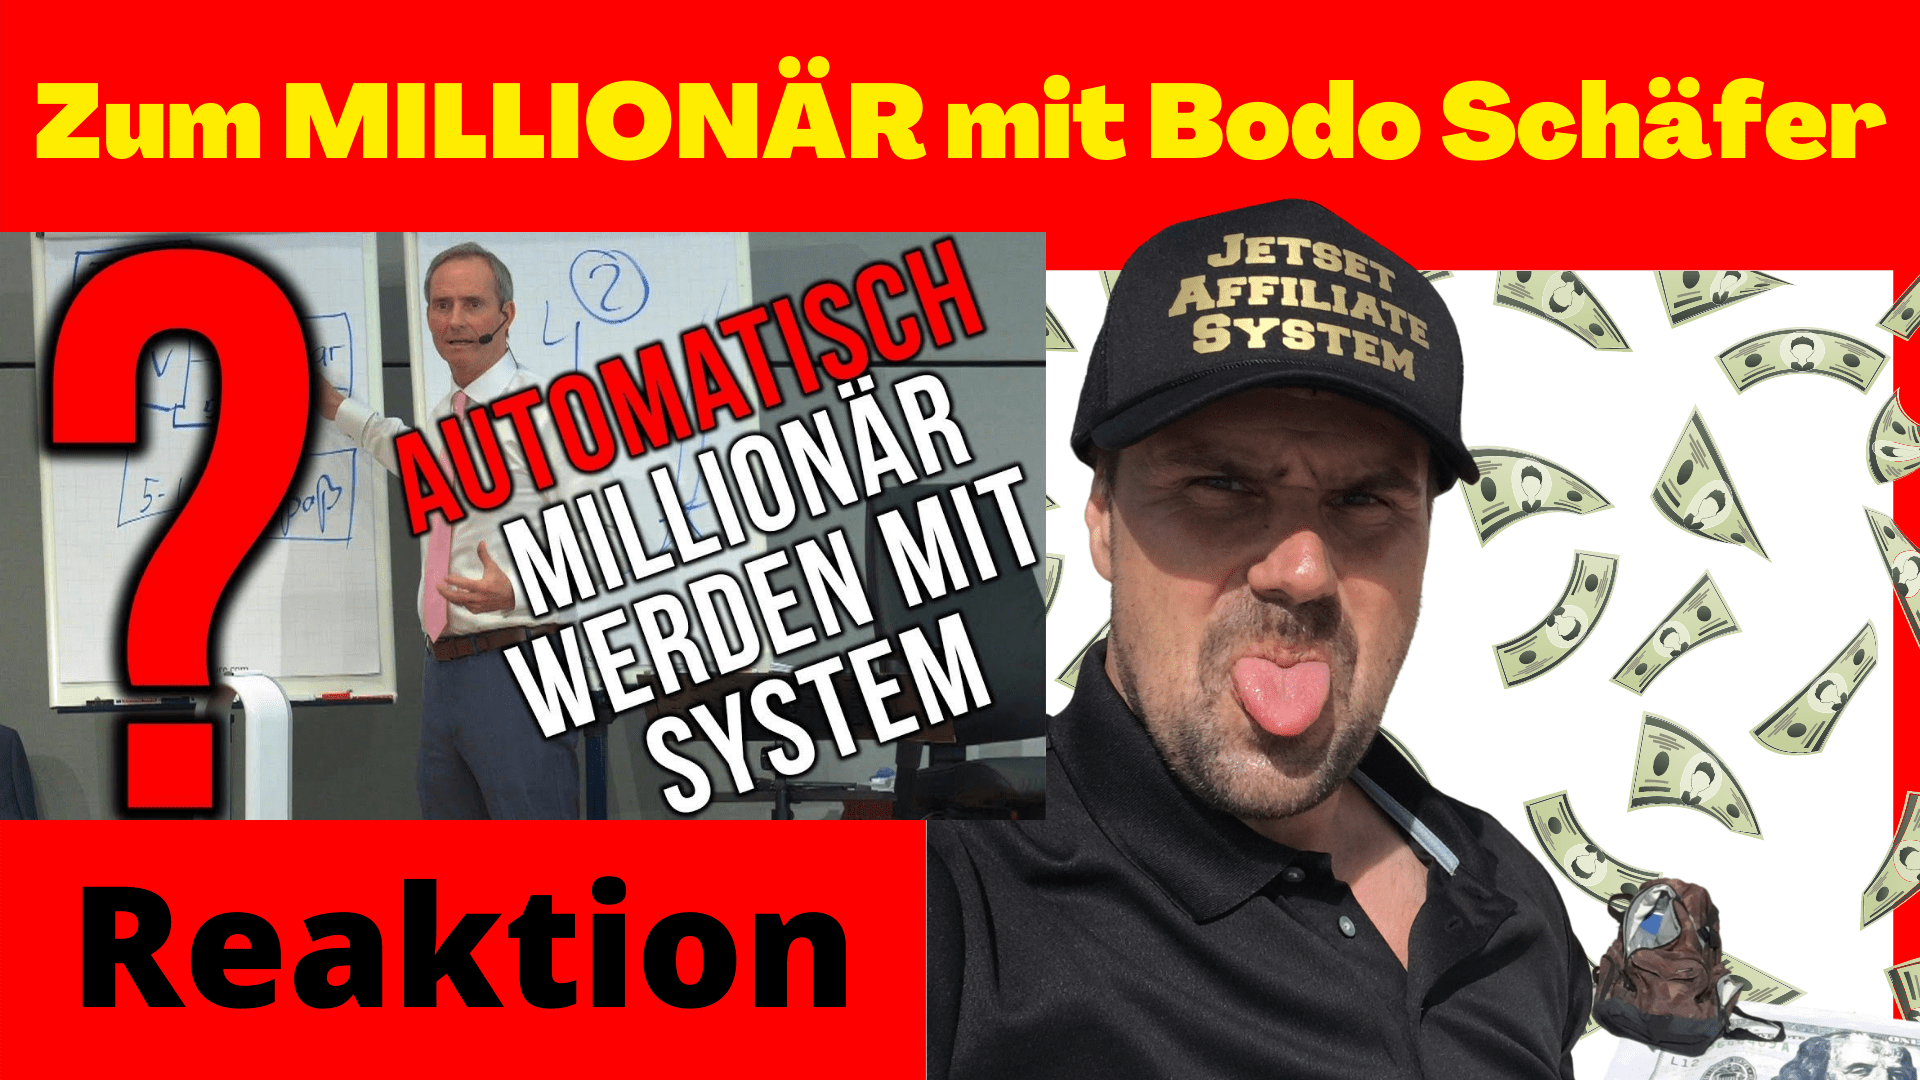 Automatisch zum MILLIONÄR mit Bodo Schäfer